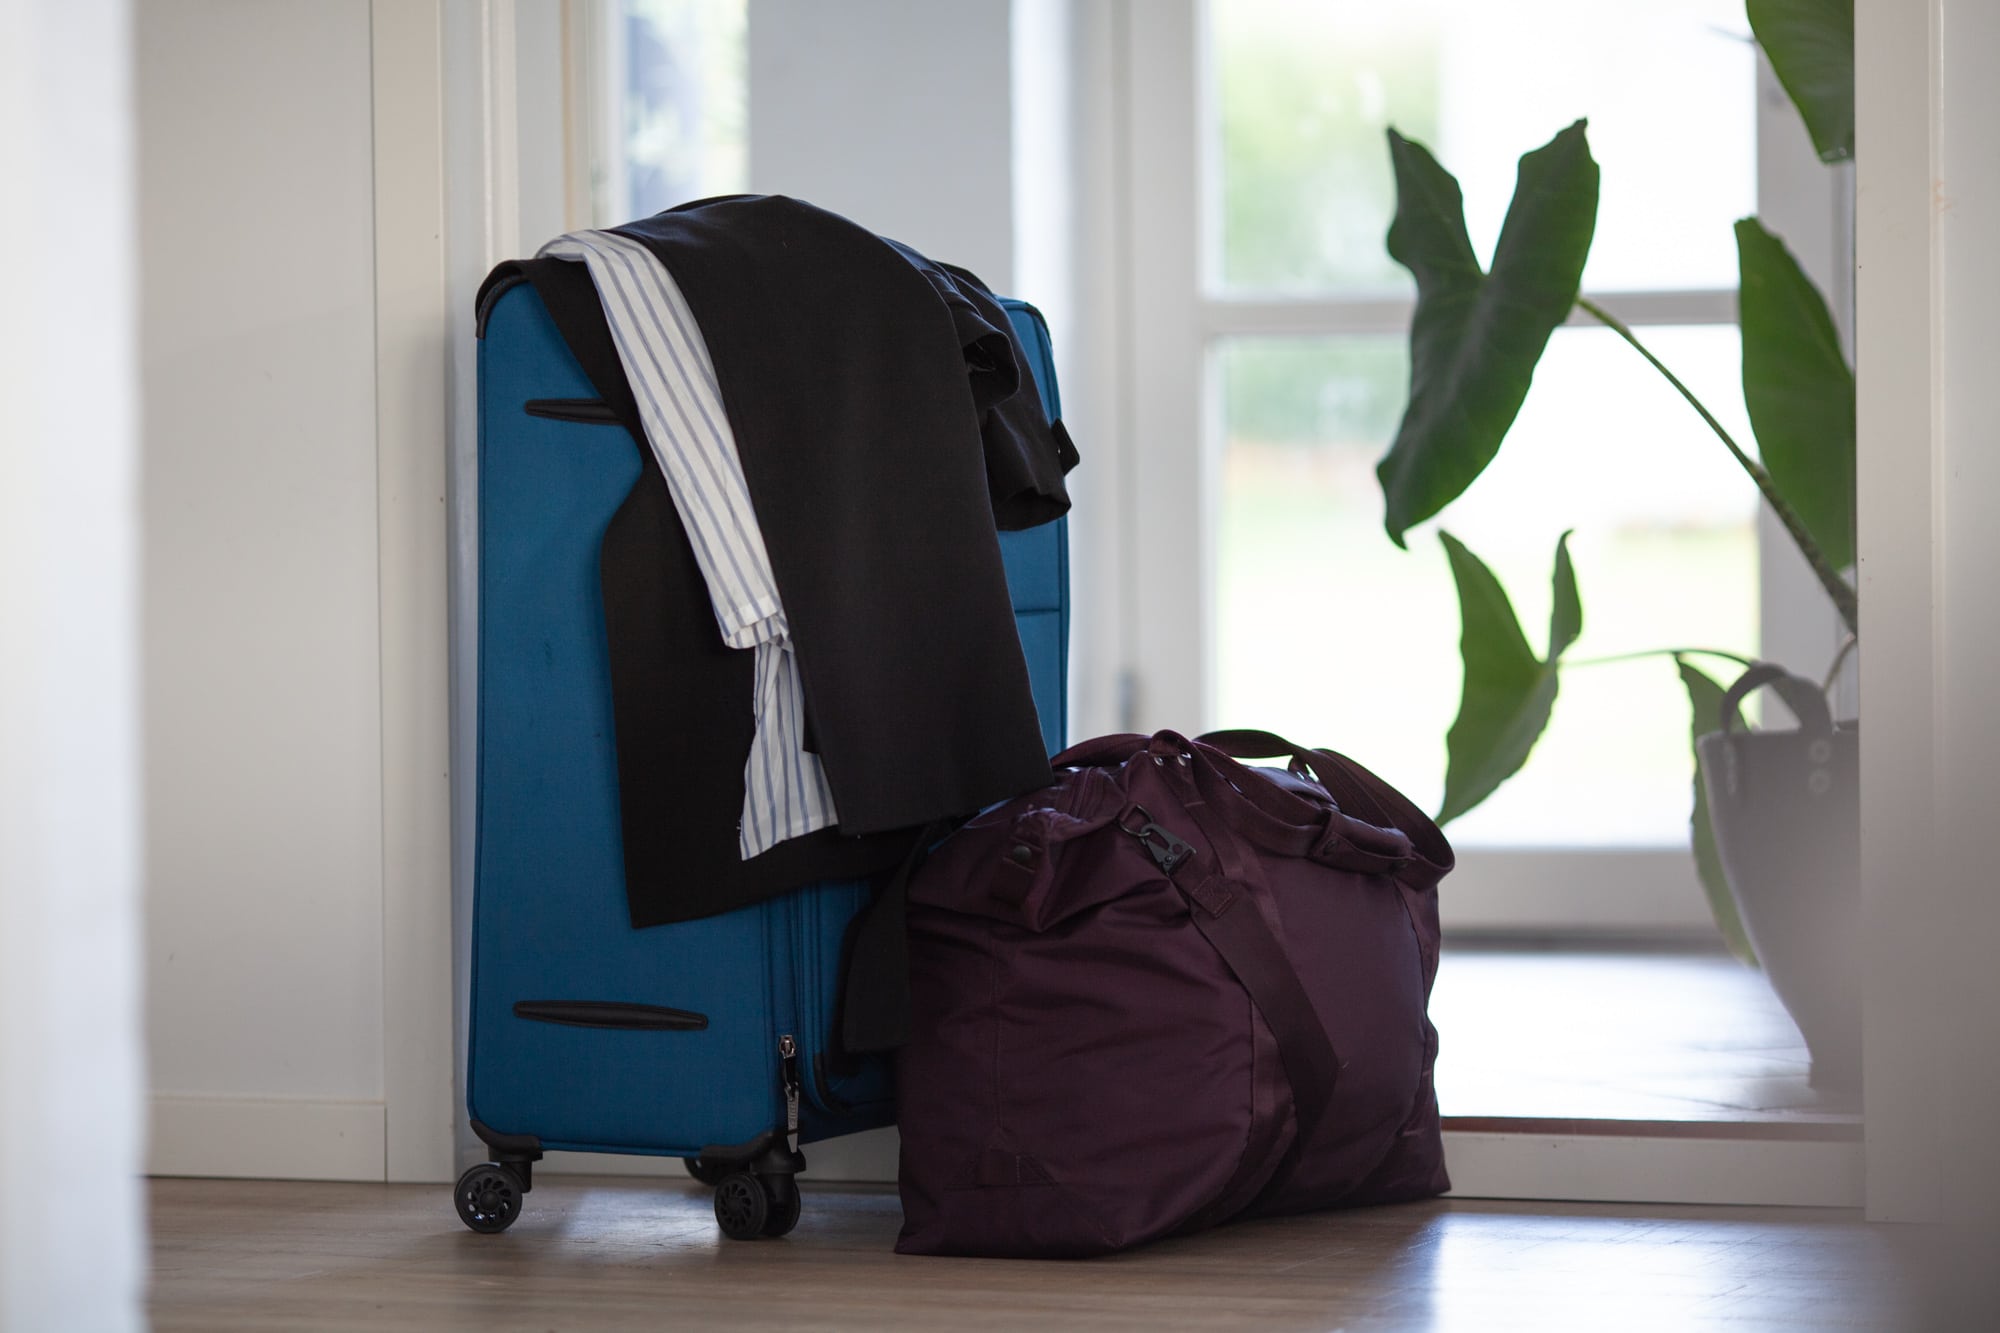 en kuffert og en rejsetaske